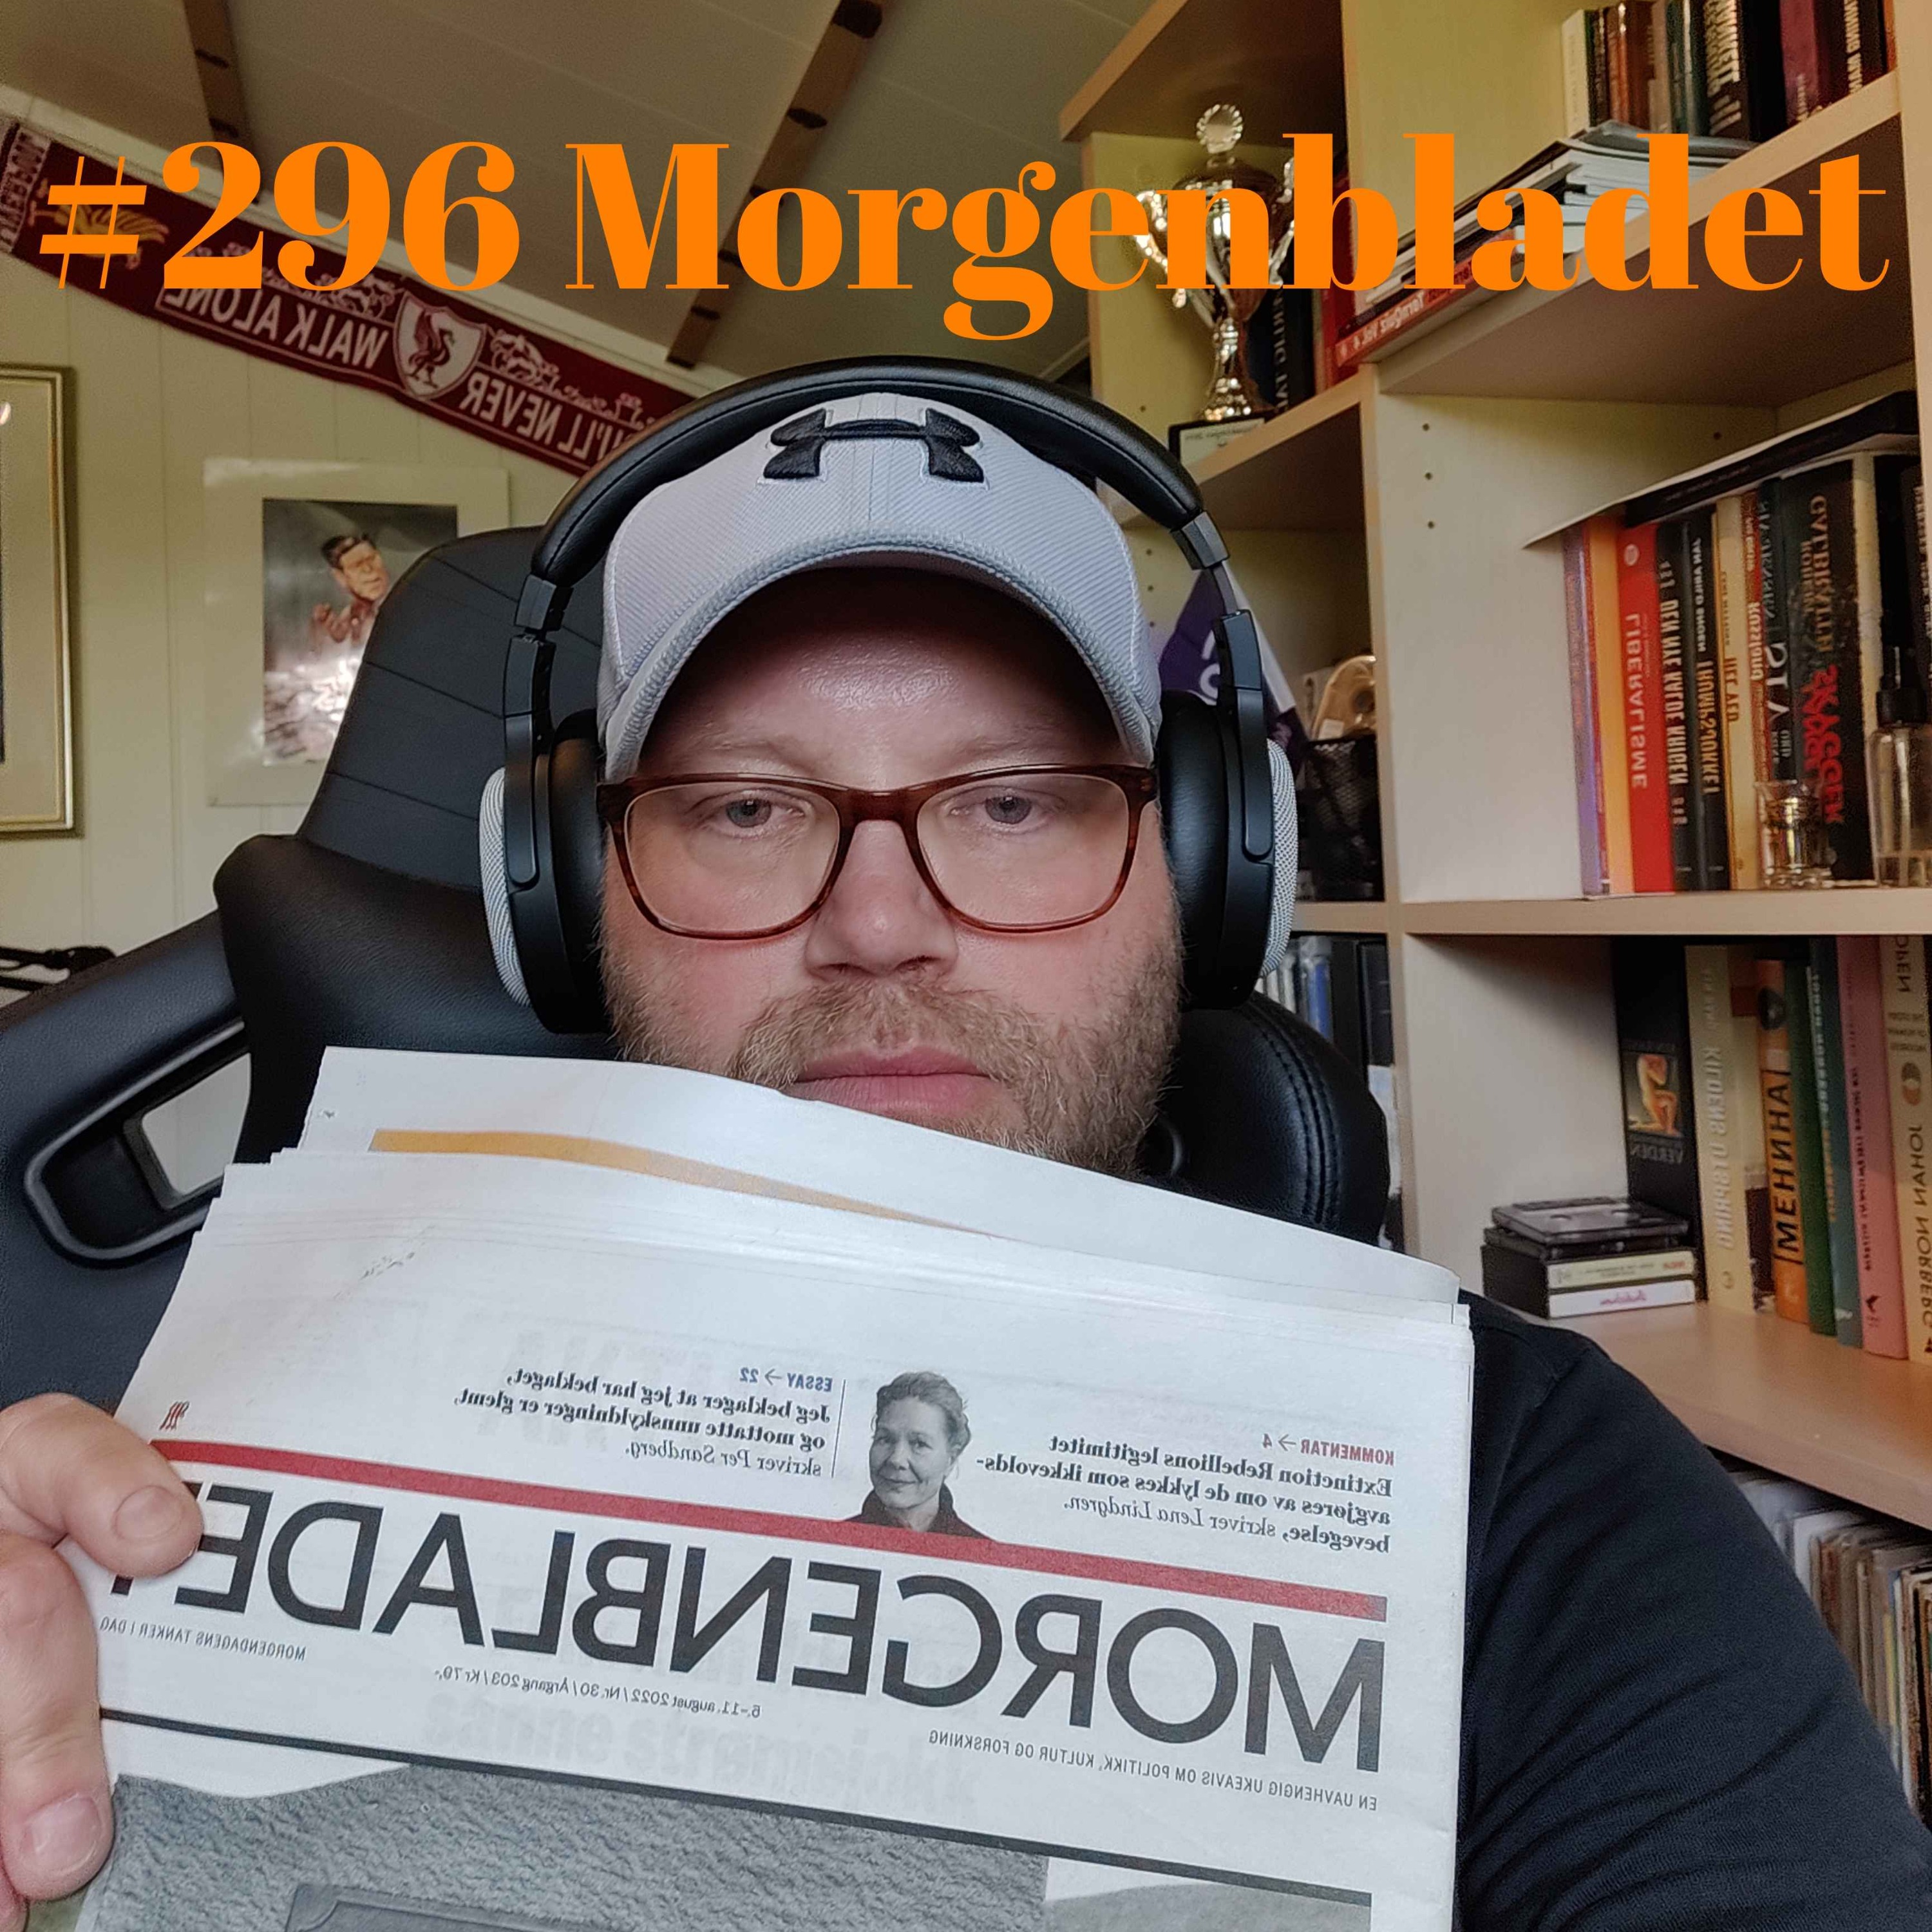 #296 Morgenbladet Image